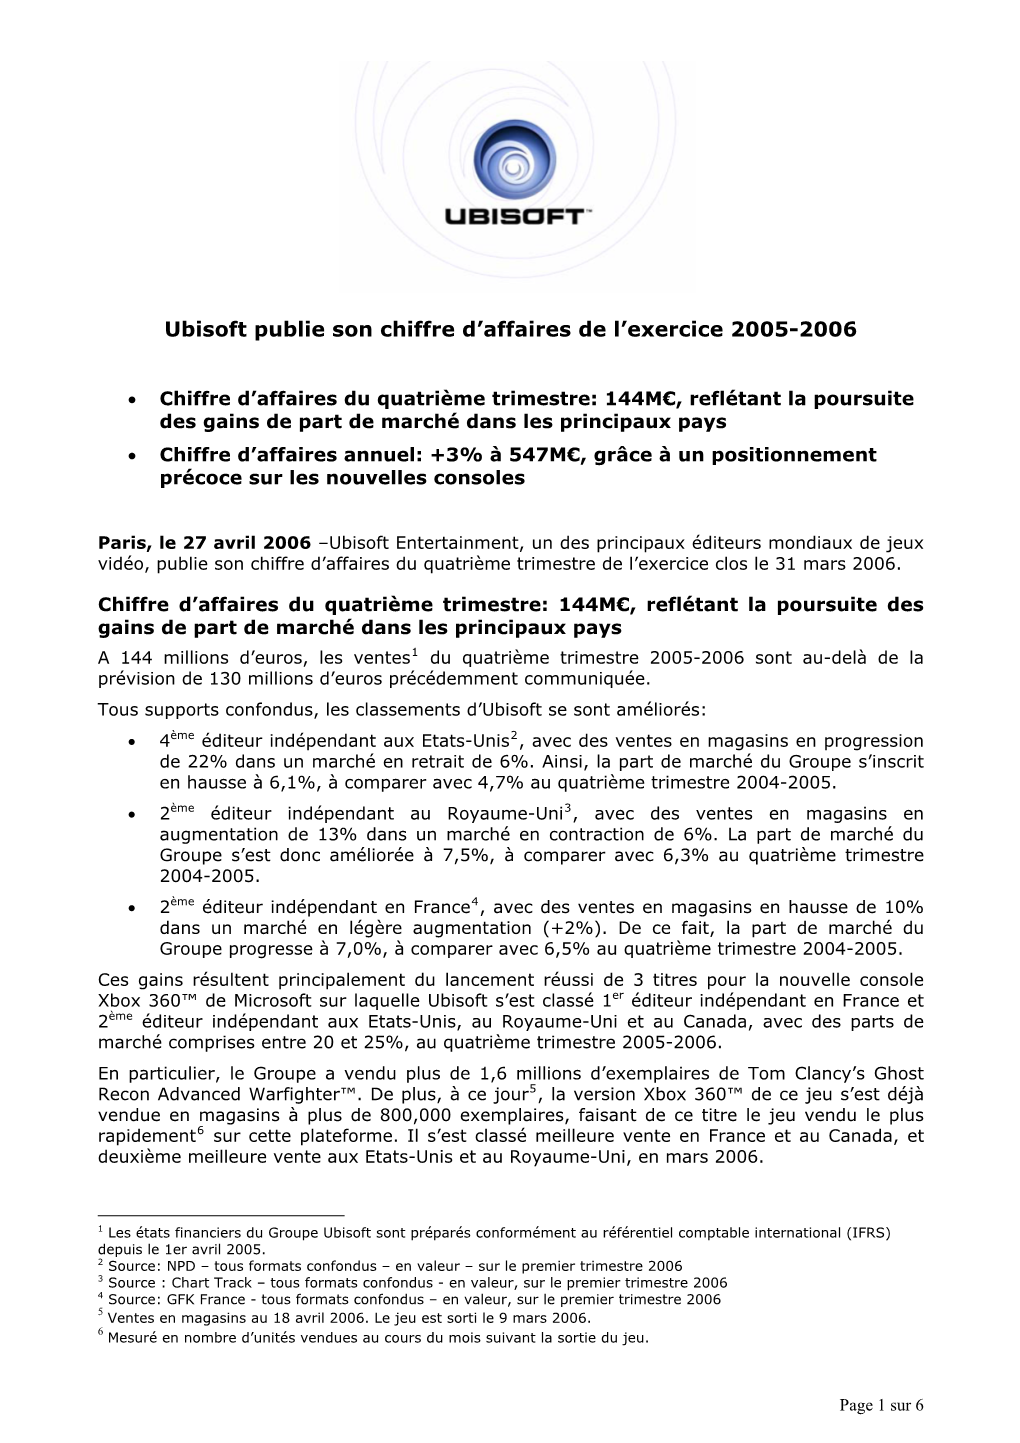 Chiffre D'affaires Q4 2000-2001